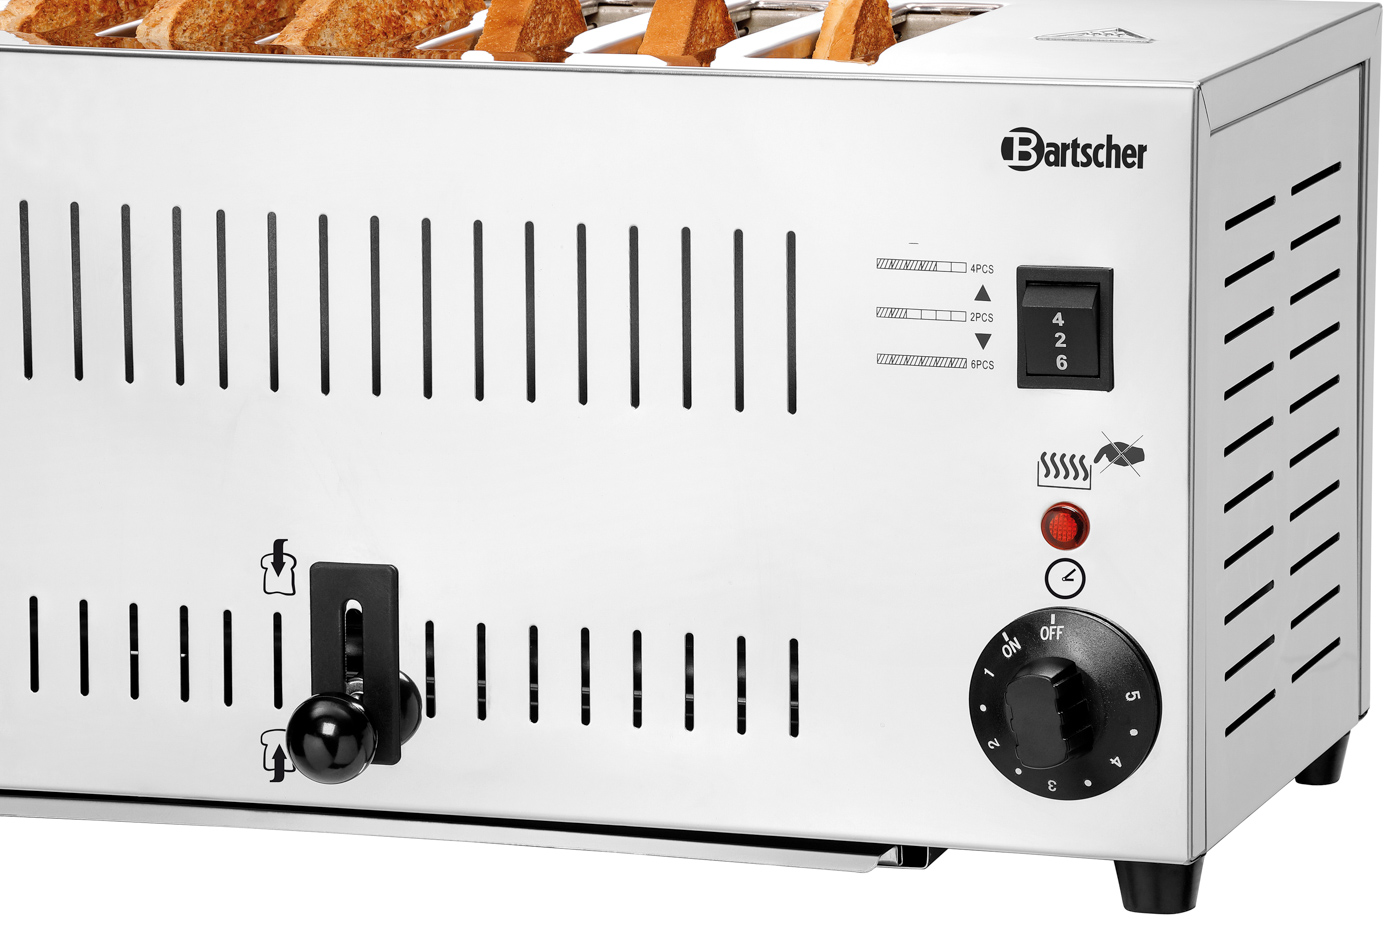 Bartscher Toaster TS60 | Kontrollleuchte: Aufheizen | Maße: 40,5 x 27,5 x 220 cm. Gewicht: 5,6 kg